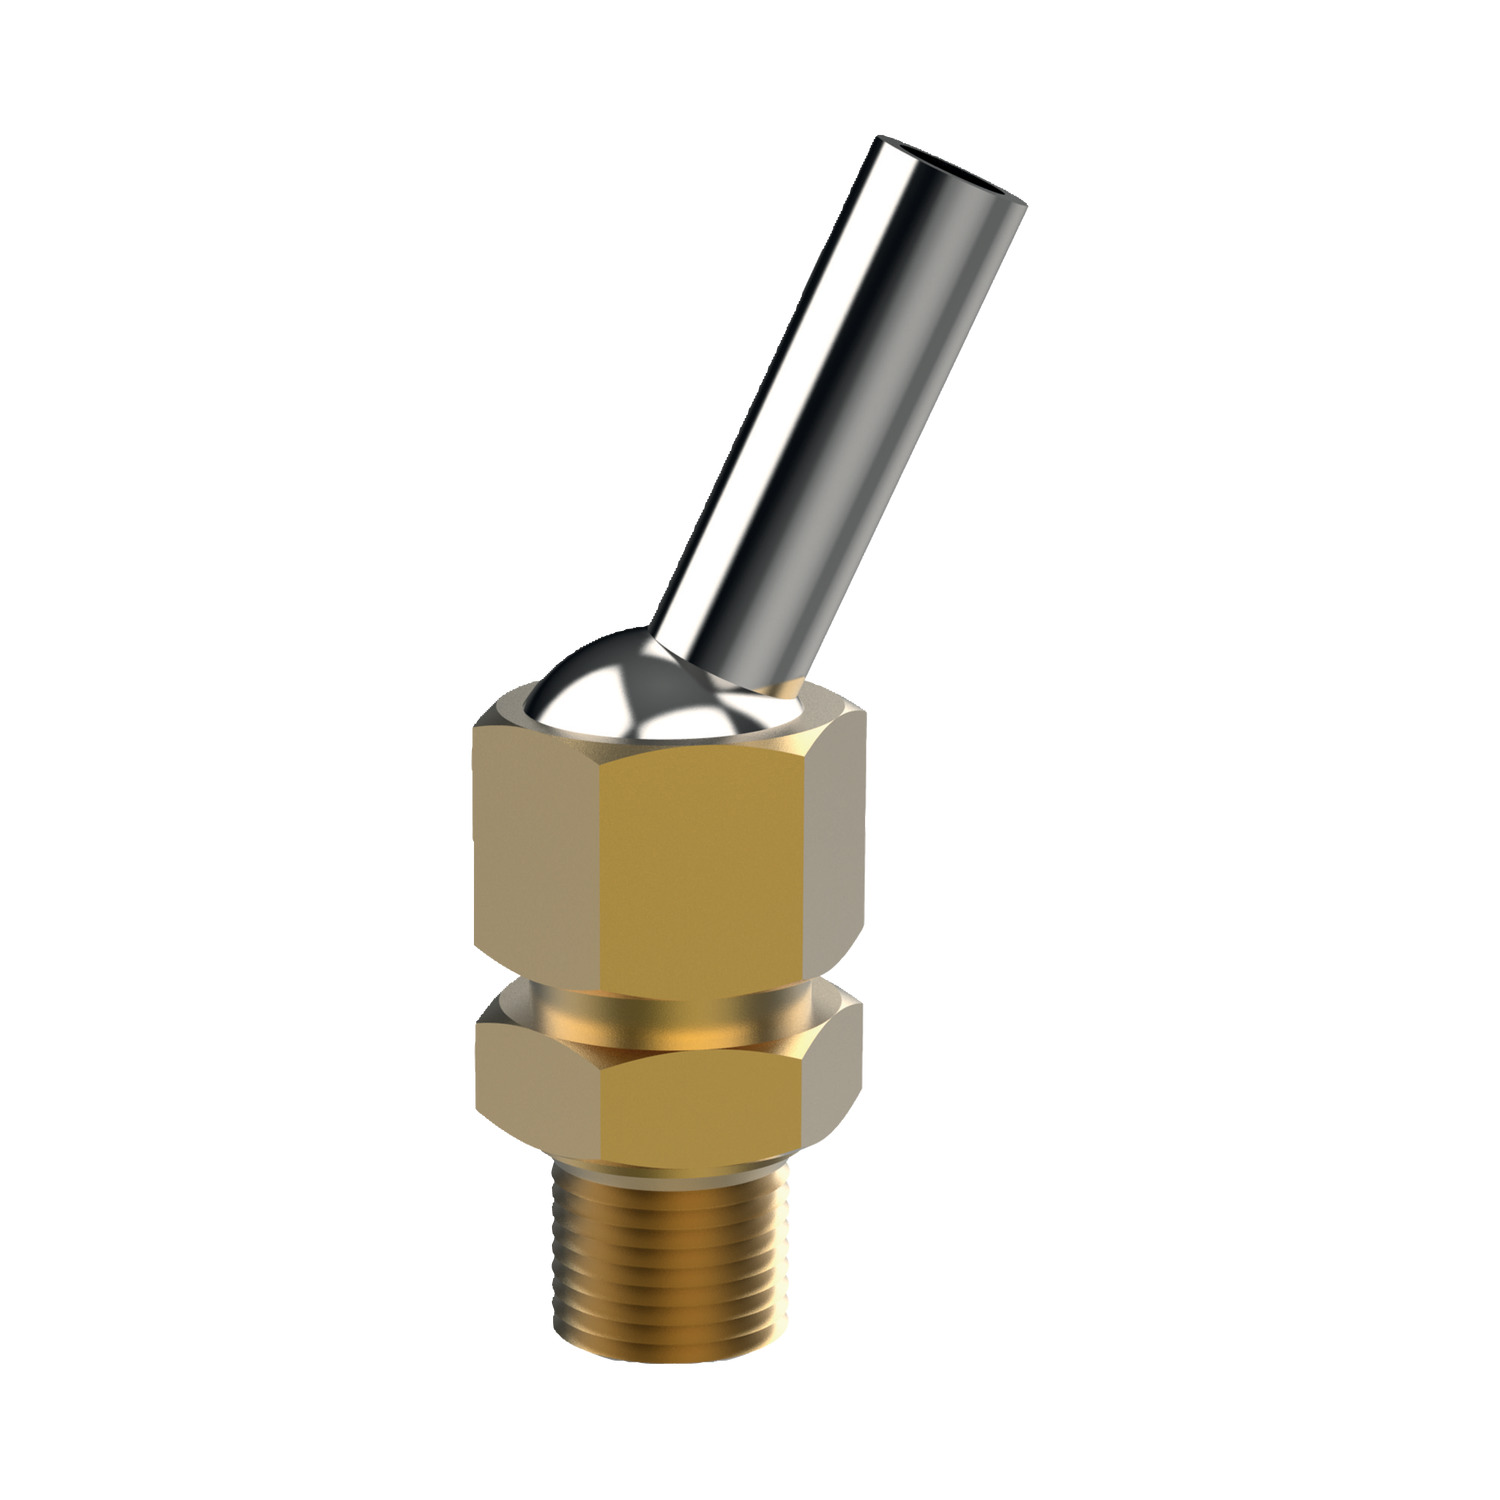 Product 20108, Coolant Nozzles - Lock Jet max. 100 bar / 